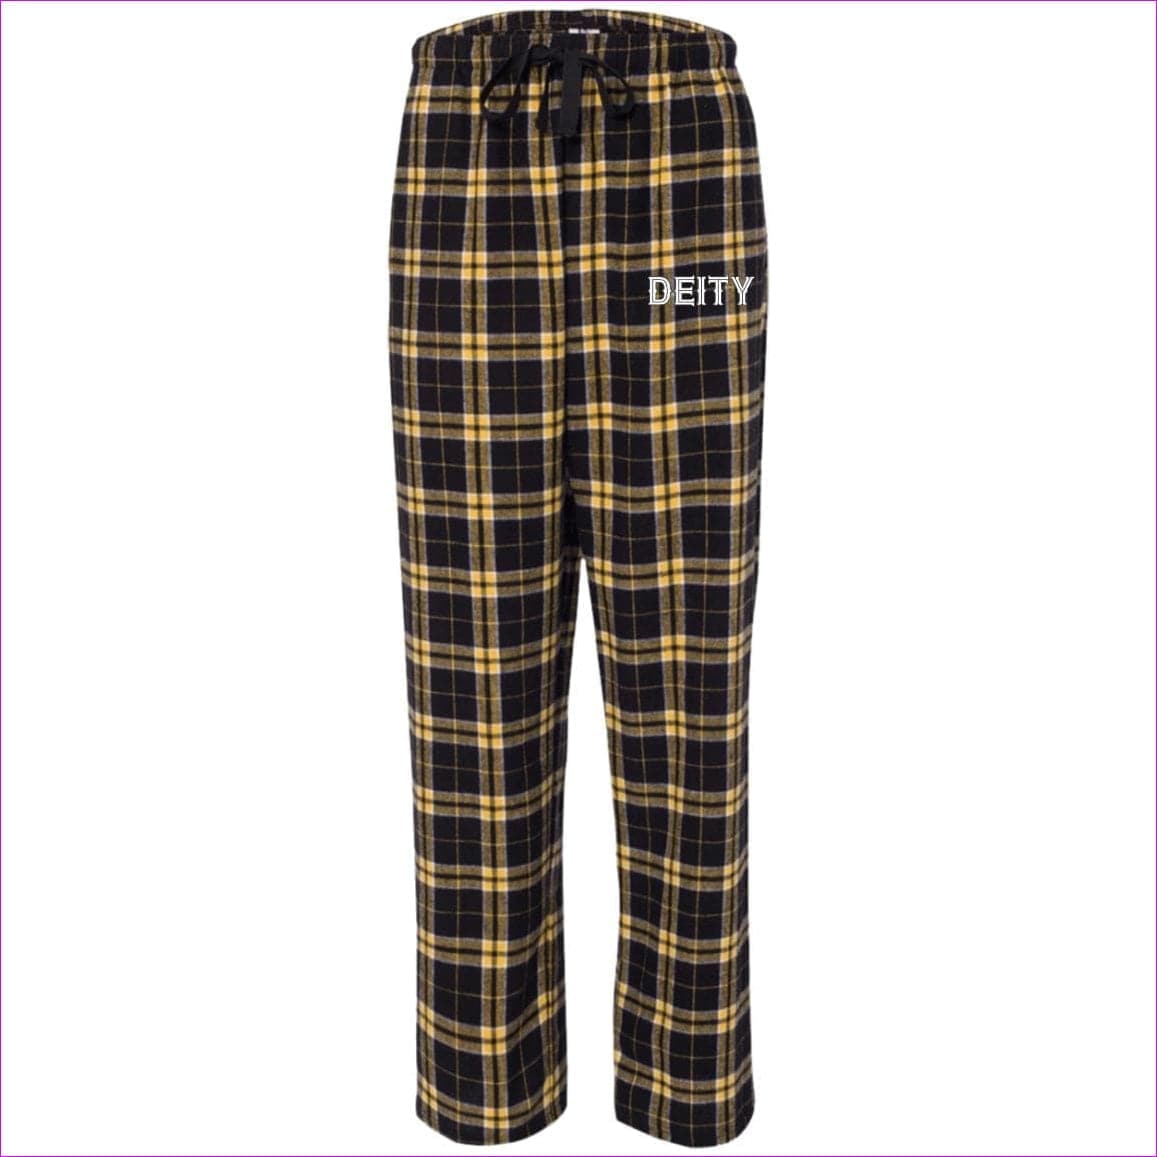 Black/Gold - Deity Flannel Pants - unisex pajamas Pants at TFC&H Co.